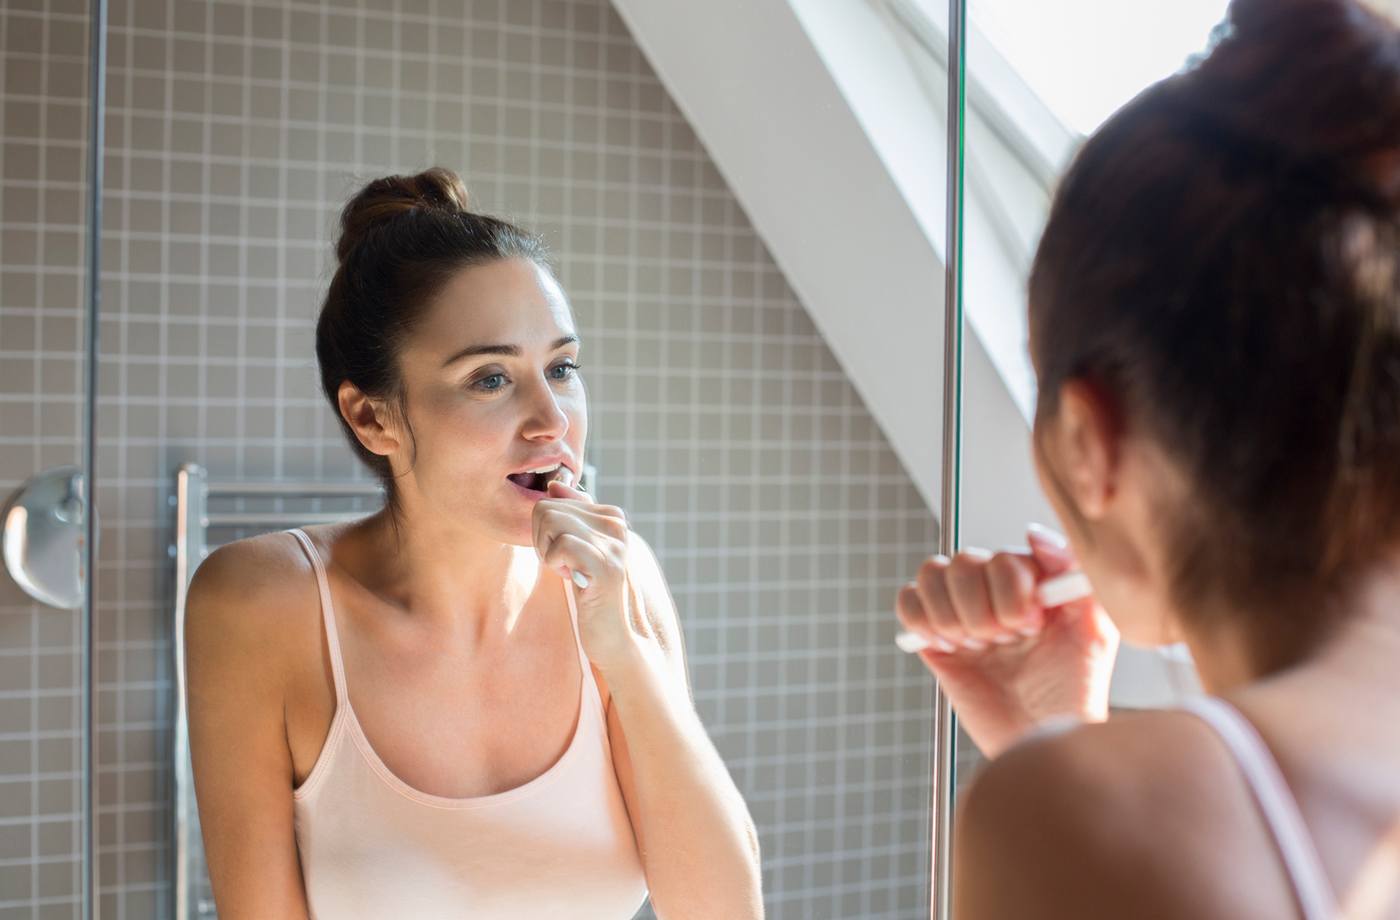 Dental hygiene: Should you use mouthwash?